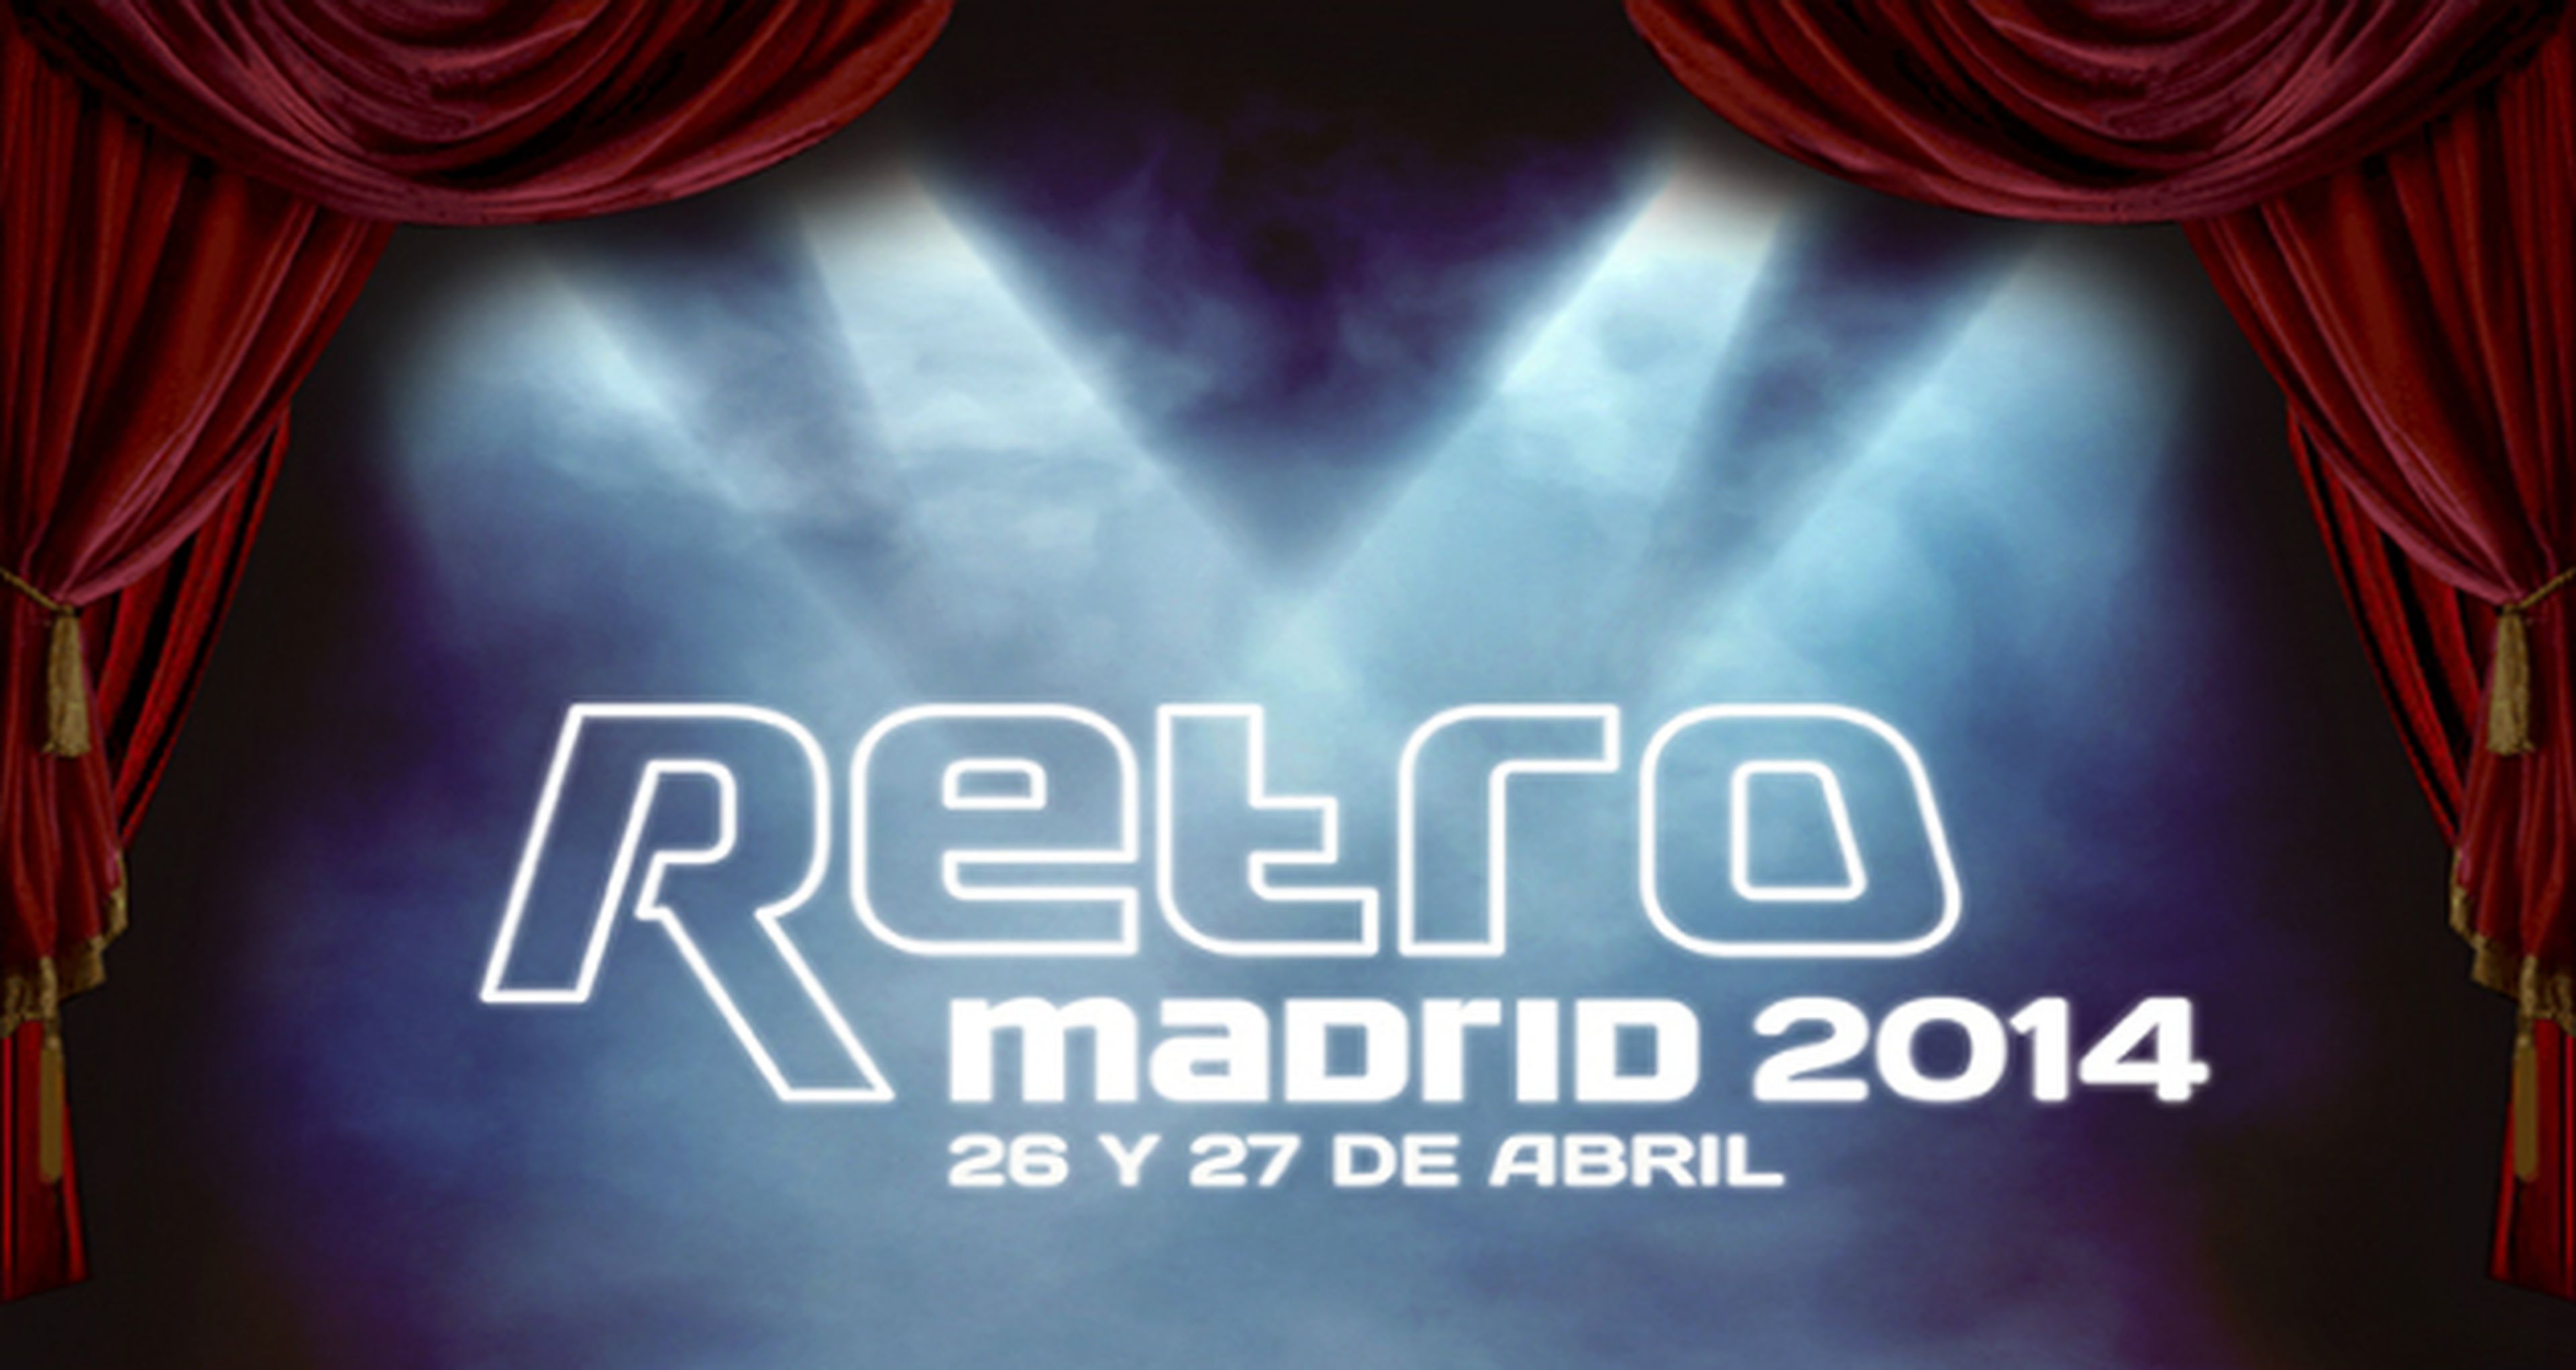 RetroMadrid 2014: "el mayor retro-espectáculo del mundo"